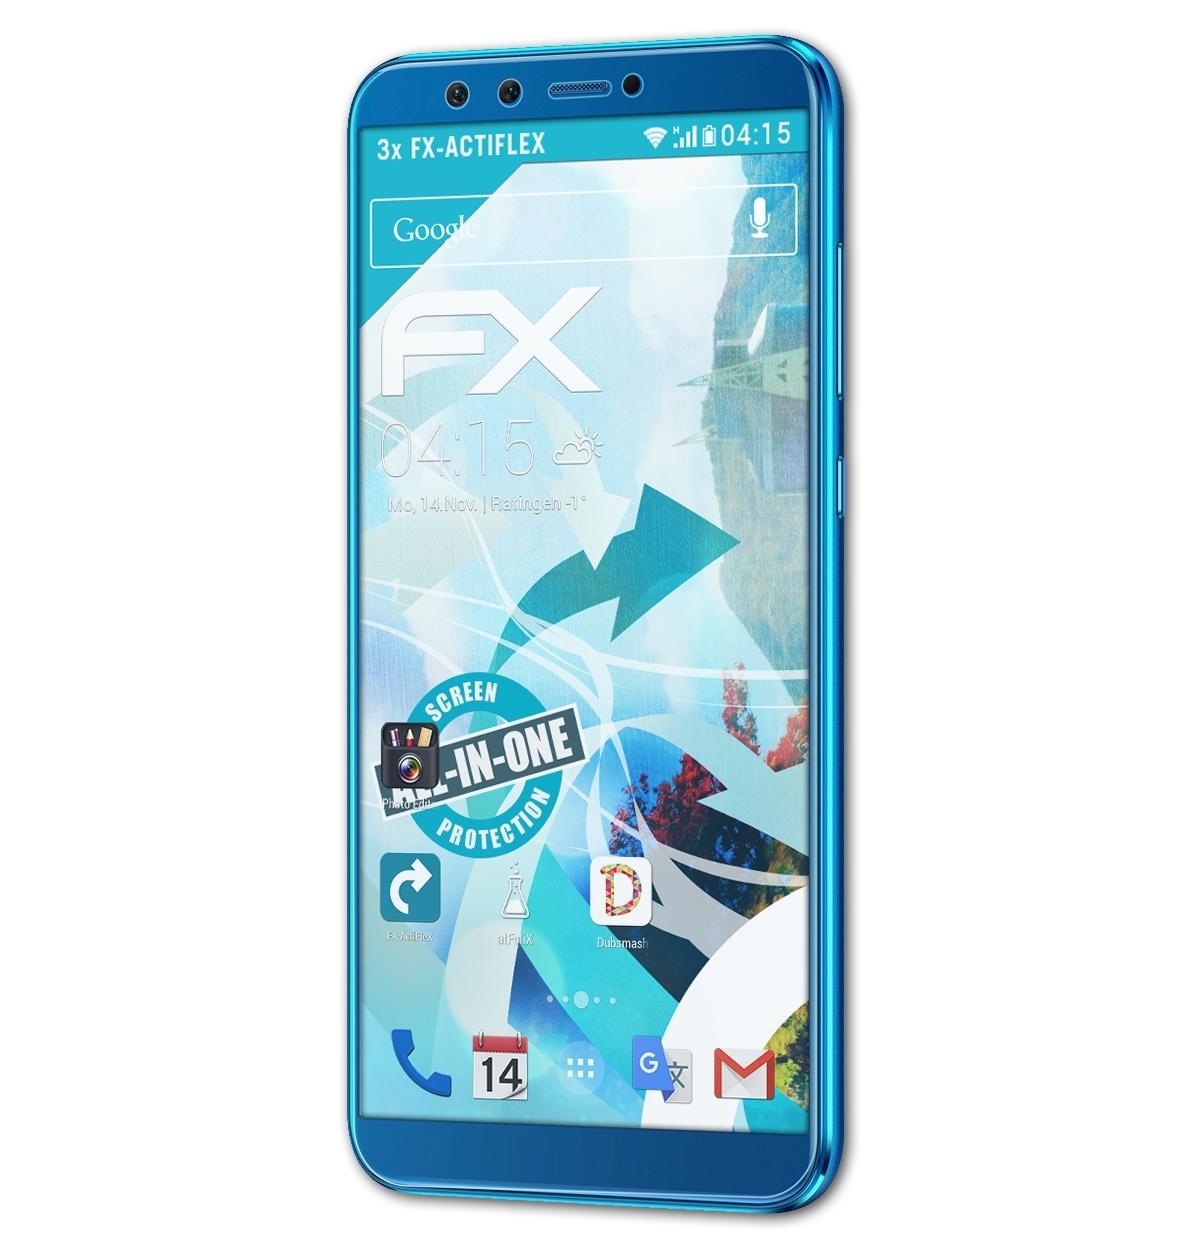 Lite) FX-ActiFleX 9 Displayschutz(für Huawei 3x Honor ATFOLIX